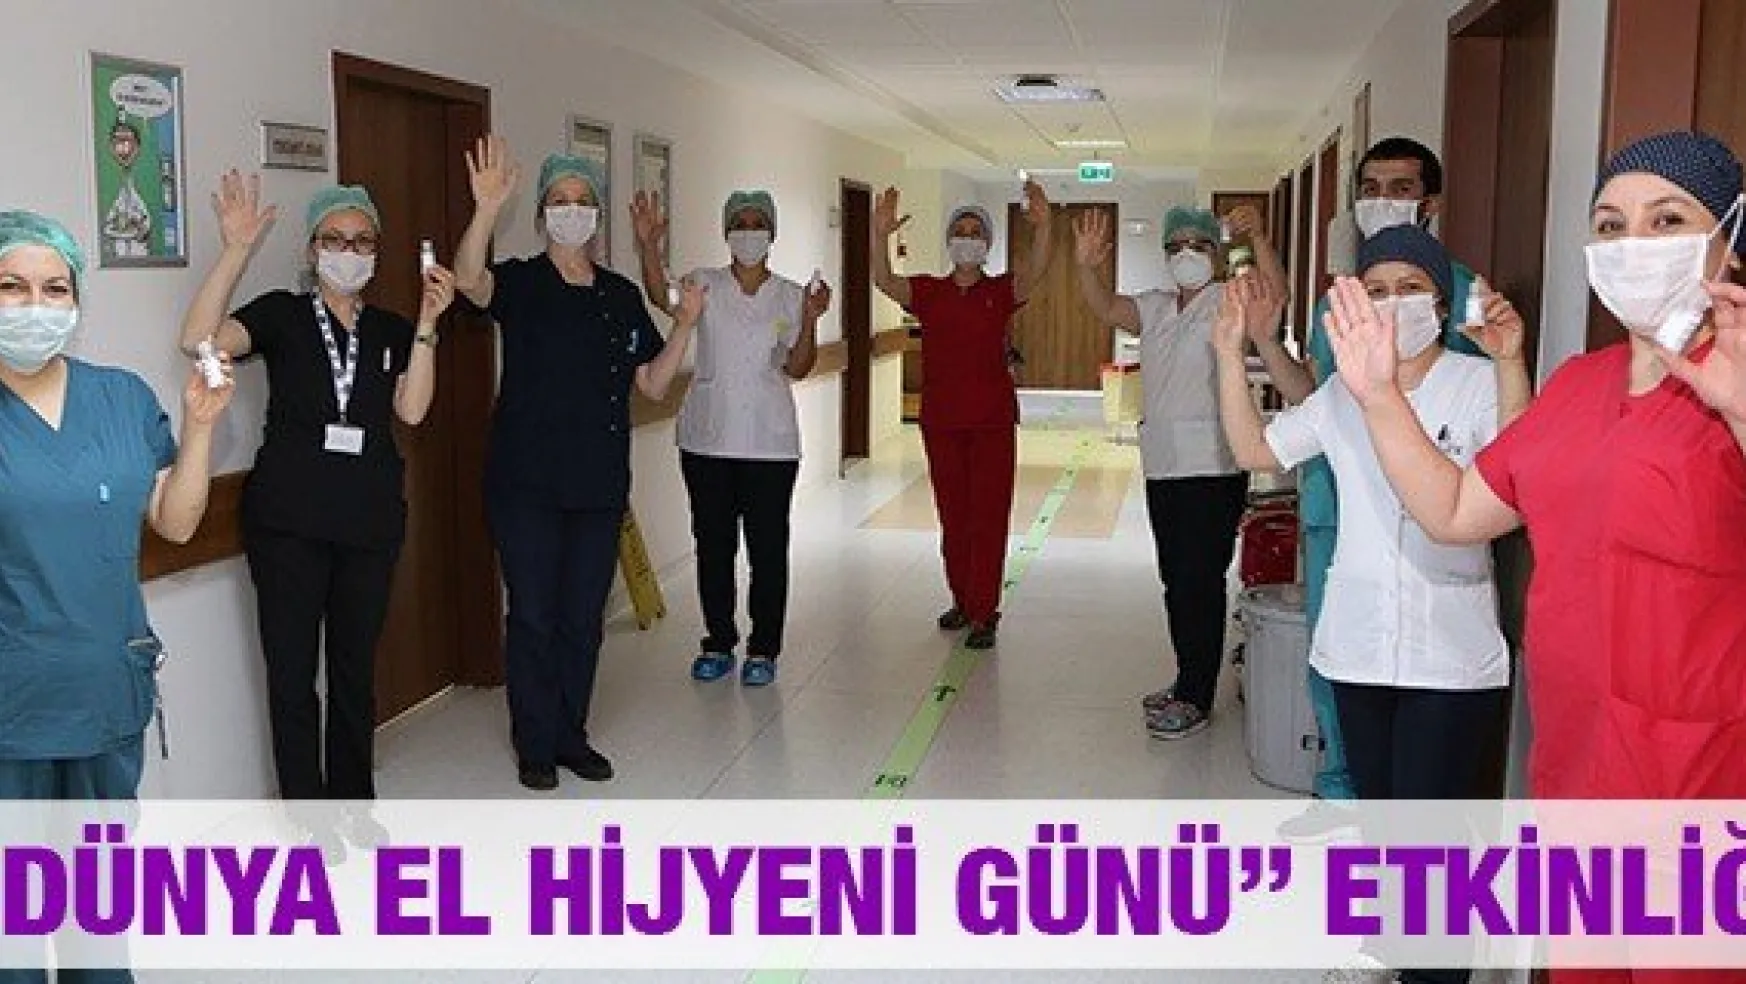 ERÜ Hastanelerinde 5 Mayıs 'Dünya El Hijyeni Günü' Etkinliği Düzenlendi